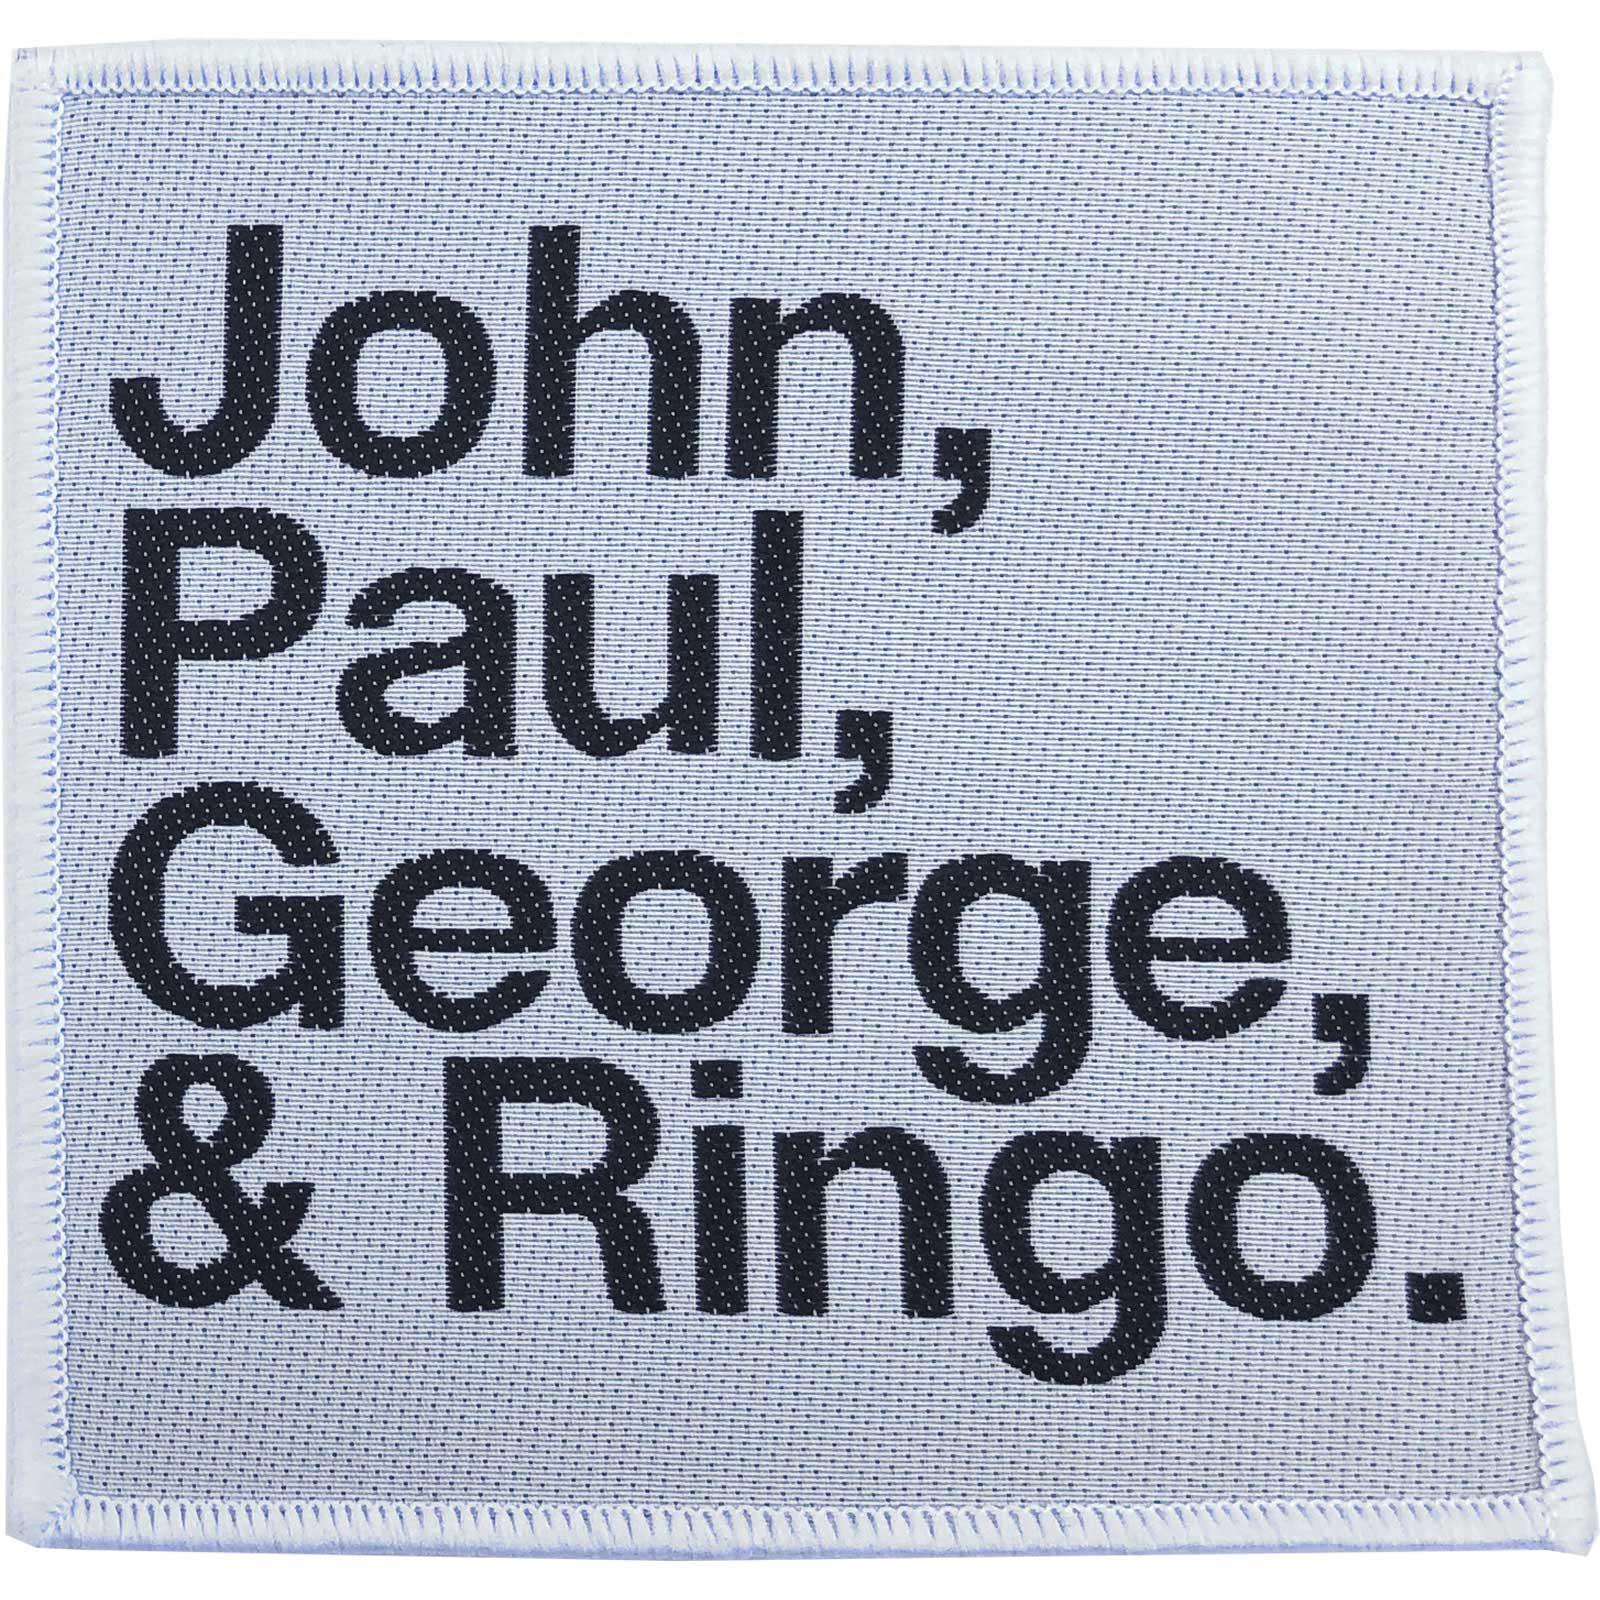 (ビートルズ) The Beatles オフィシャル商品 John Paul George & Ringo ワッペン パッチ 【海外通販】